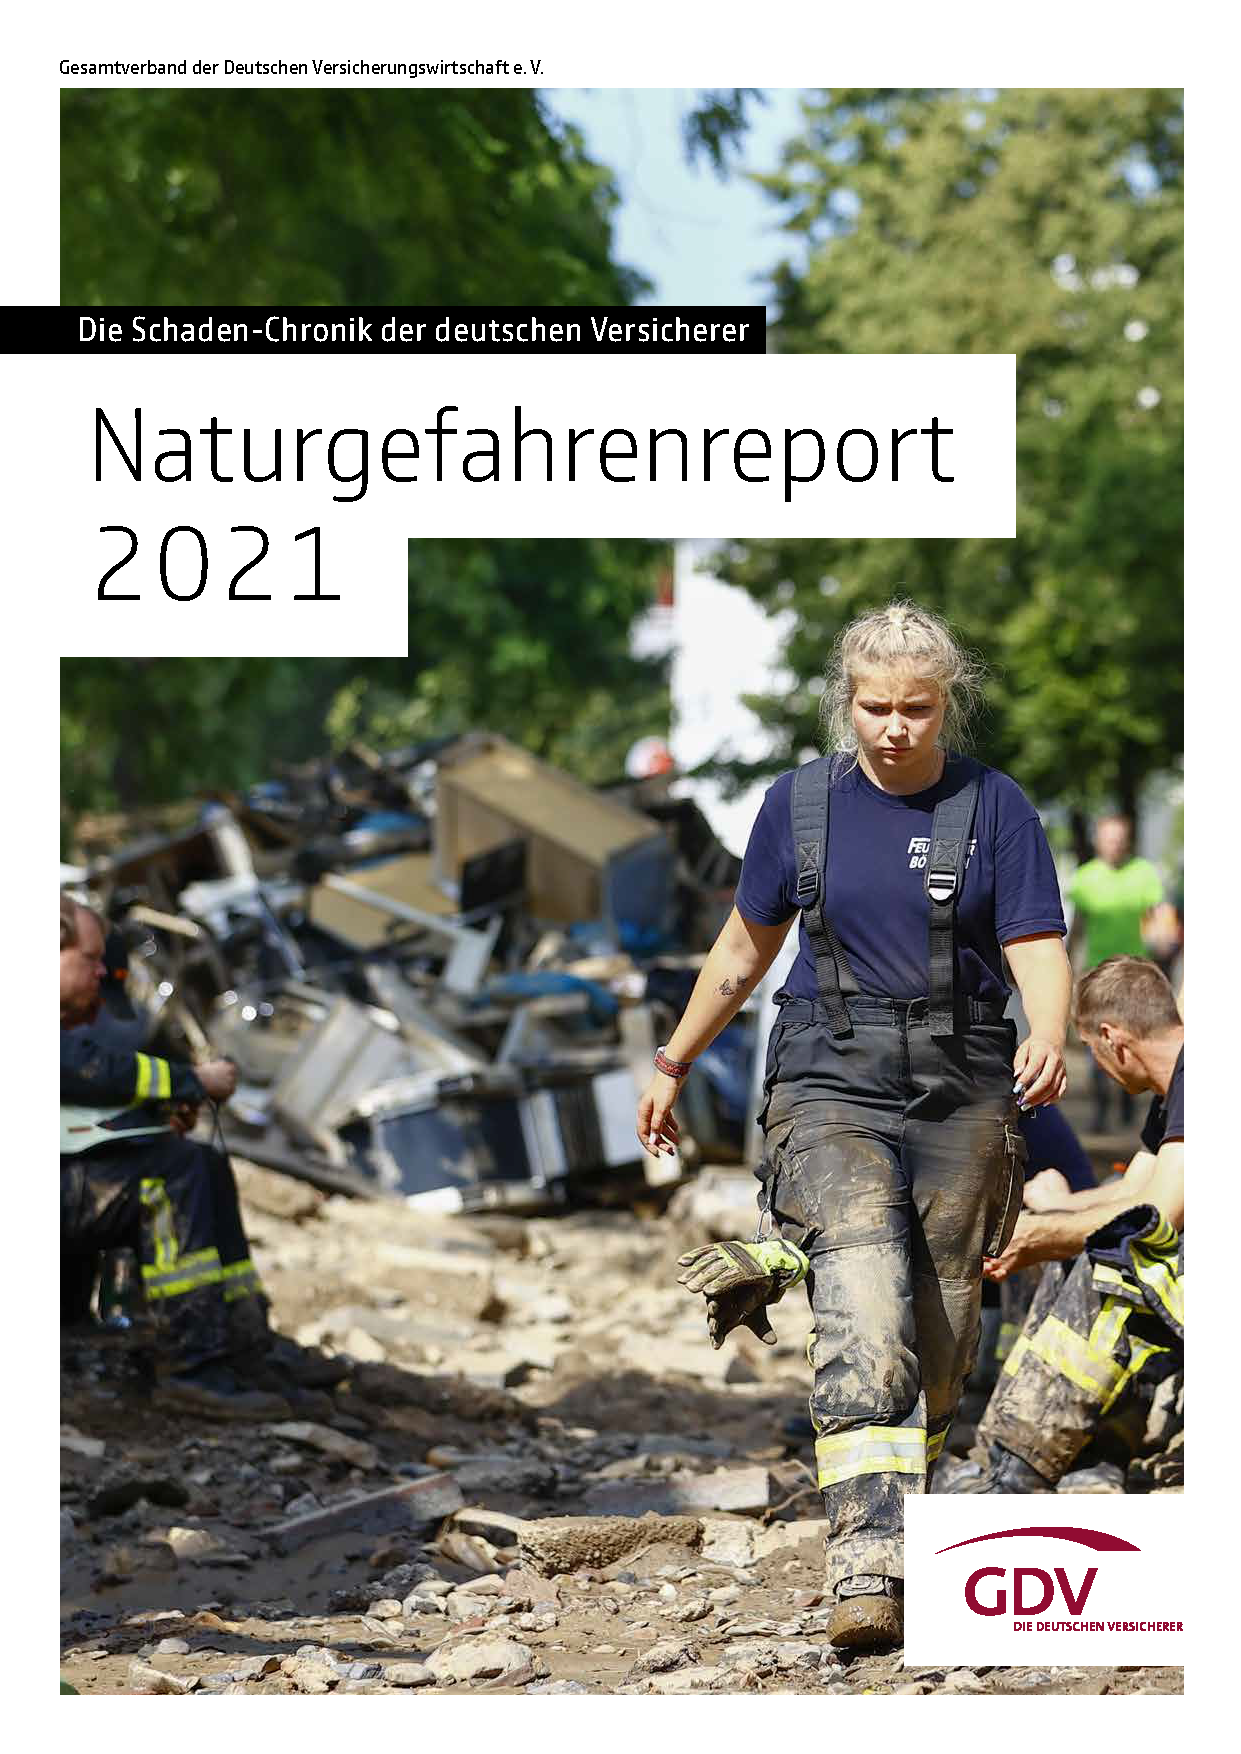 Gesamtverband der Deutschen Versicherungswirtschaft (GDV): Naturgefahrenreport 2021